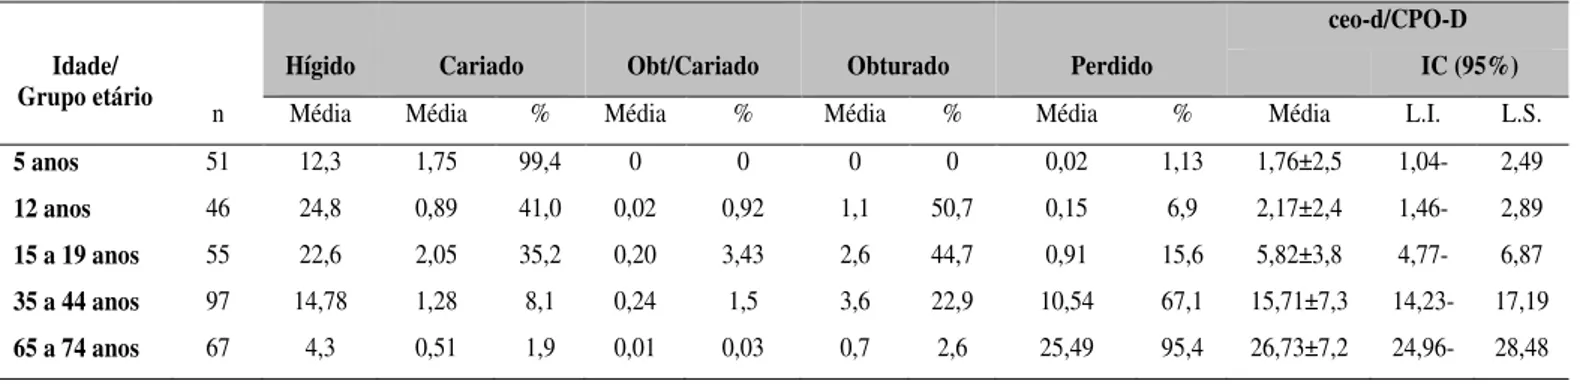 Tabela  1:  Média  do  Índice  ceo-d  (5  anos),  CPO-D  (demais  idades)  e  proporção  dos  componentes  em  relação  ao  ceo-d  ou  CPO-D  total,  segundo  grupo  etário